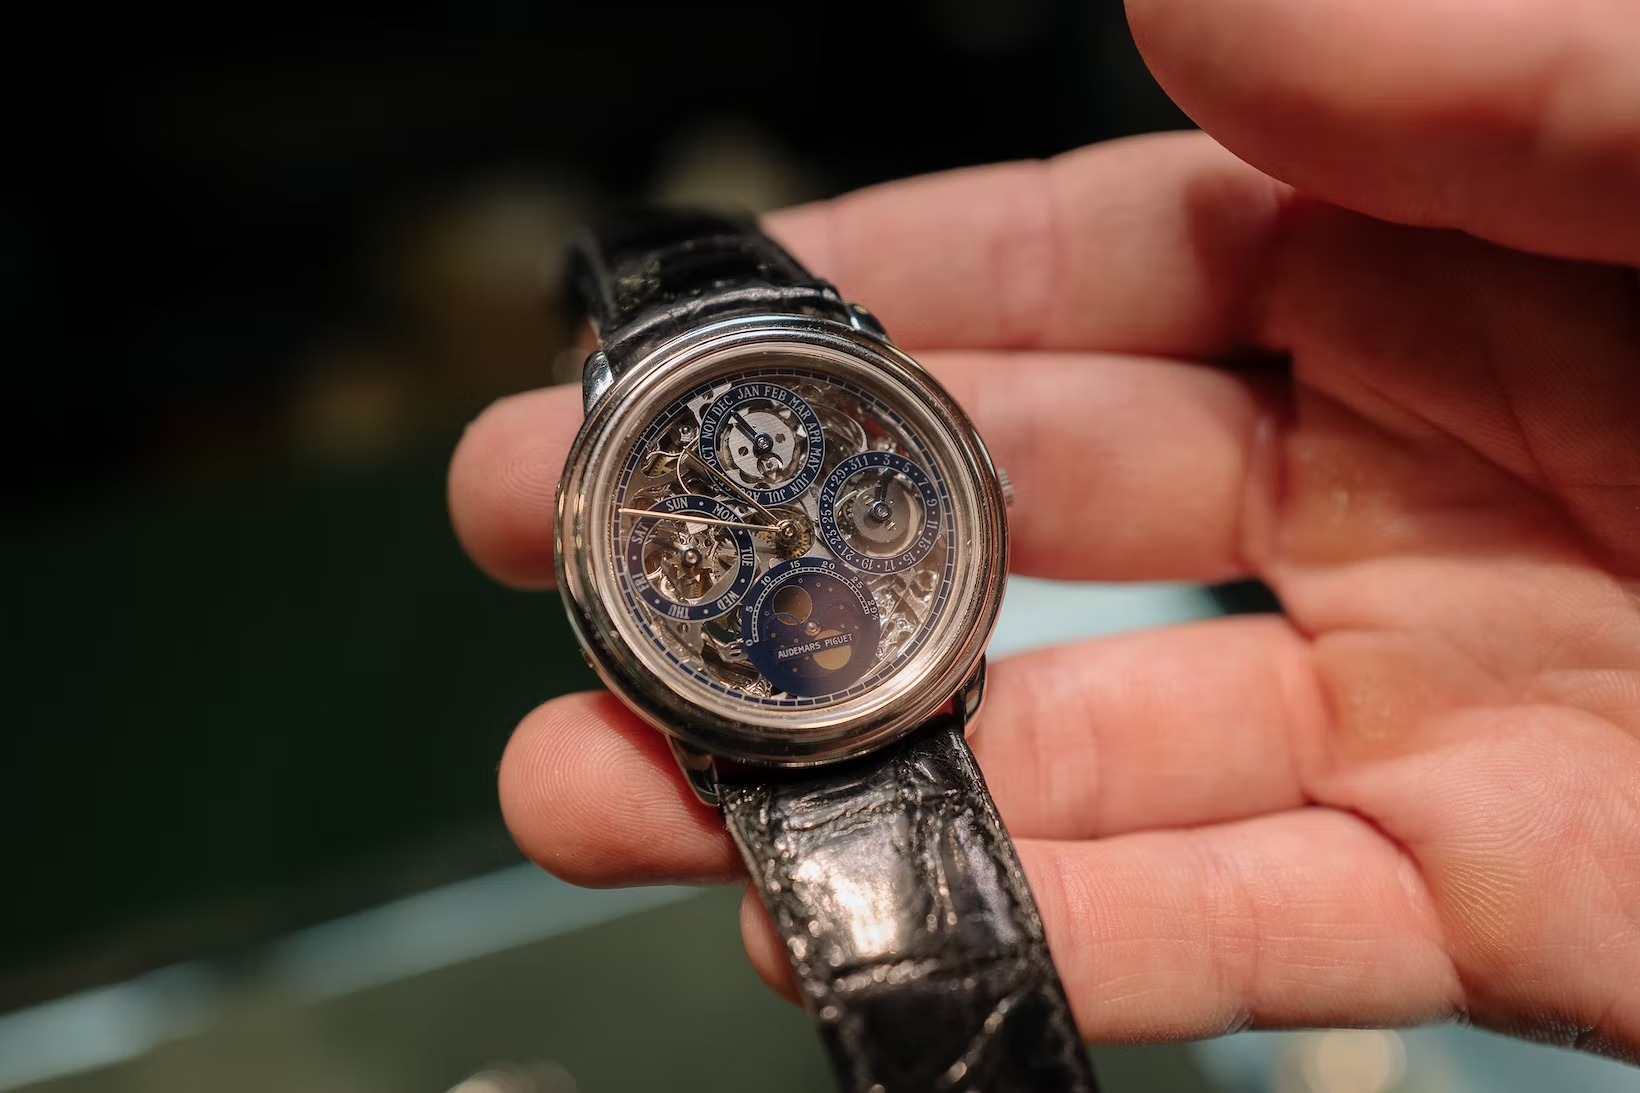 Tuyệt Chiêu “Chạy” Siêu Chính Xác Của Đồng Hồ Rolex: Superlative Chronometer 1950